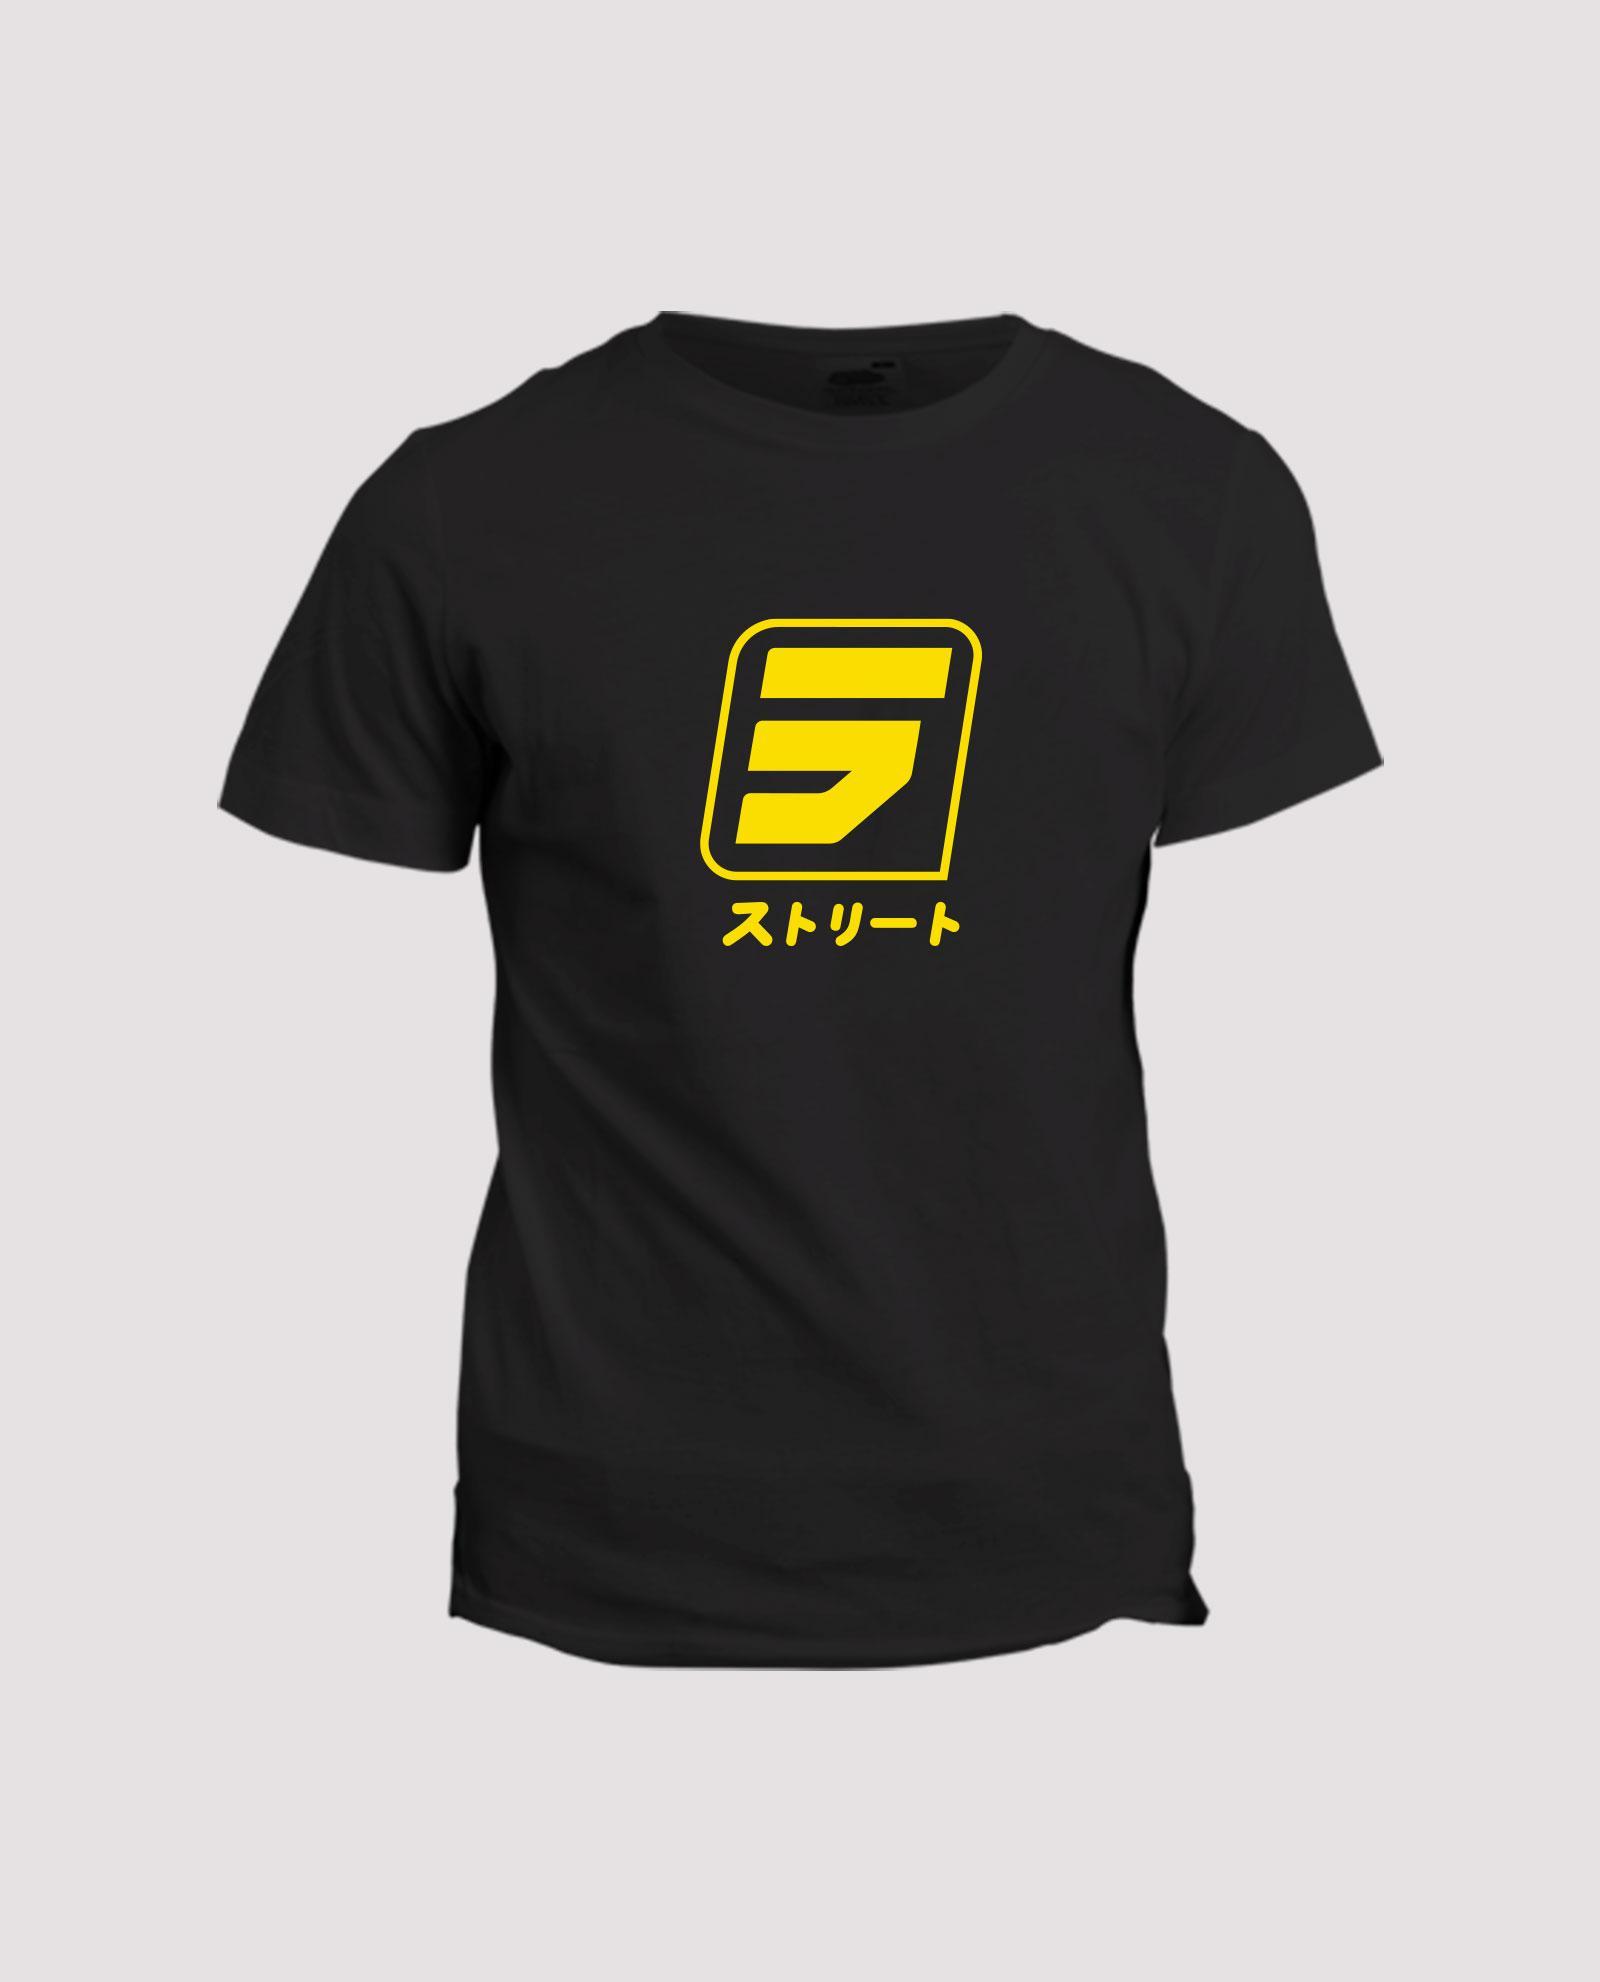 la-ligne-shop-t-shirt-noir-visuel-jaune-shibu-S-mansour-barnaoui-mma-sport